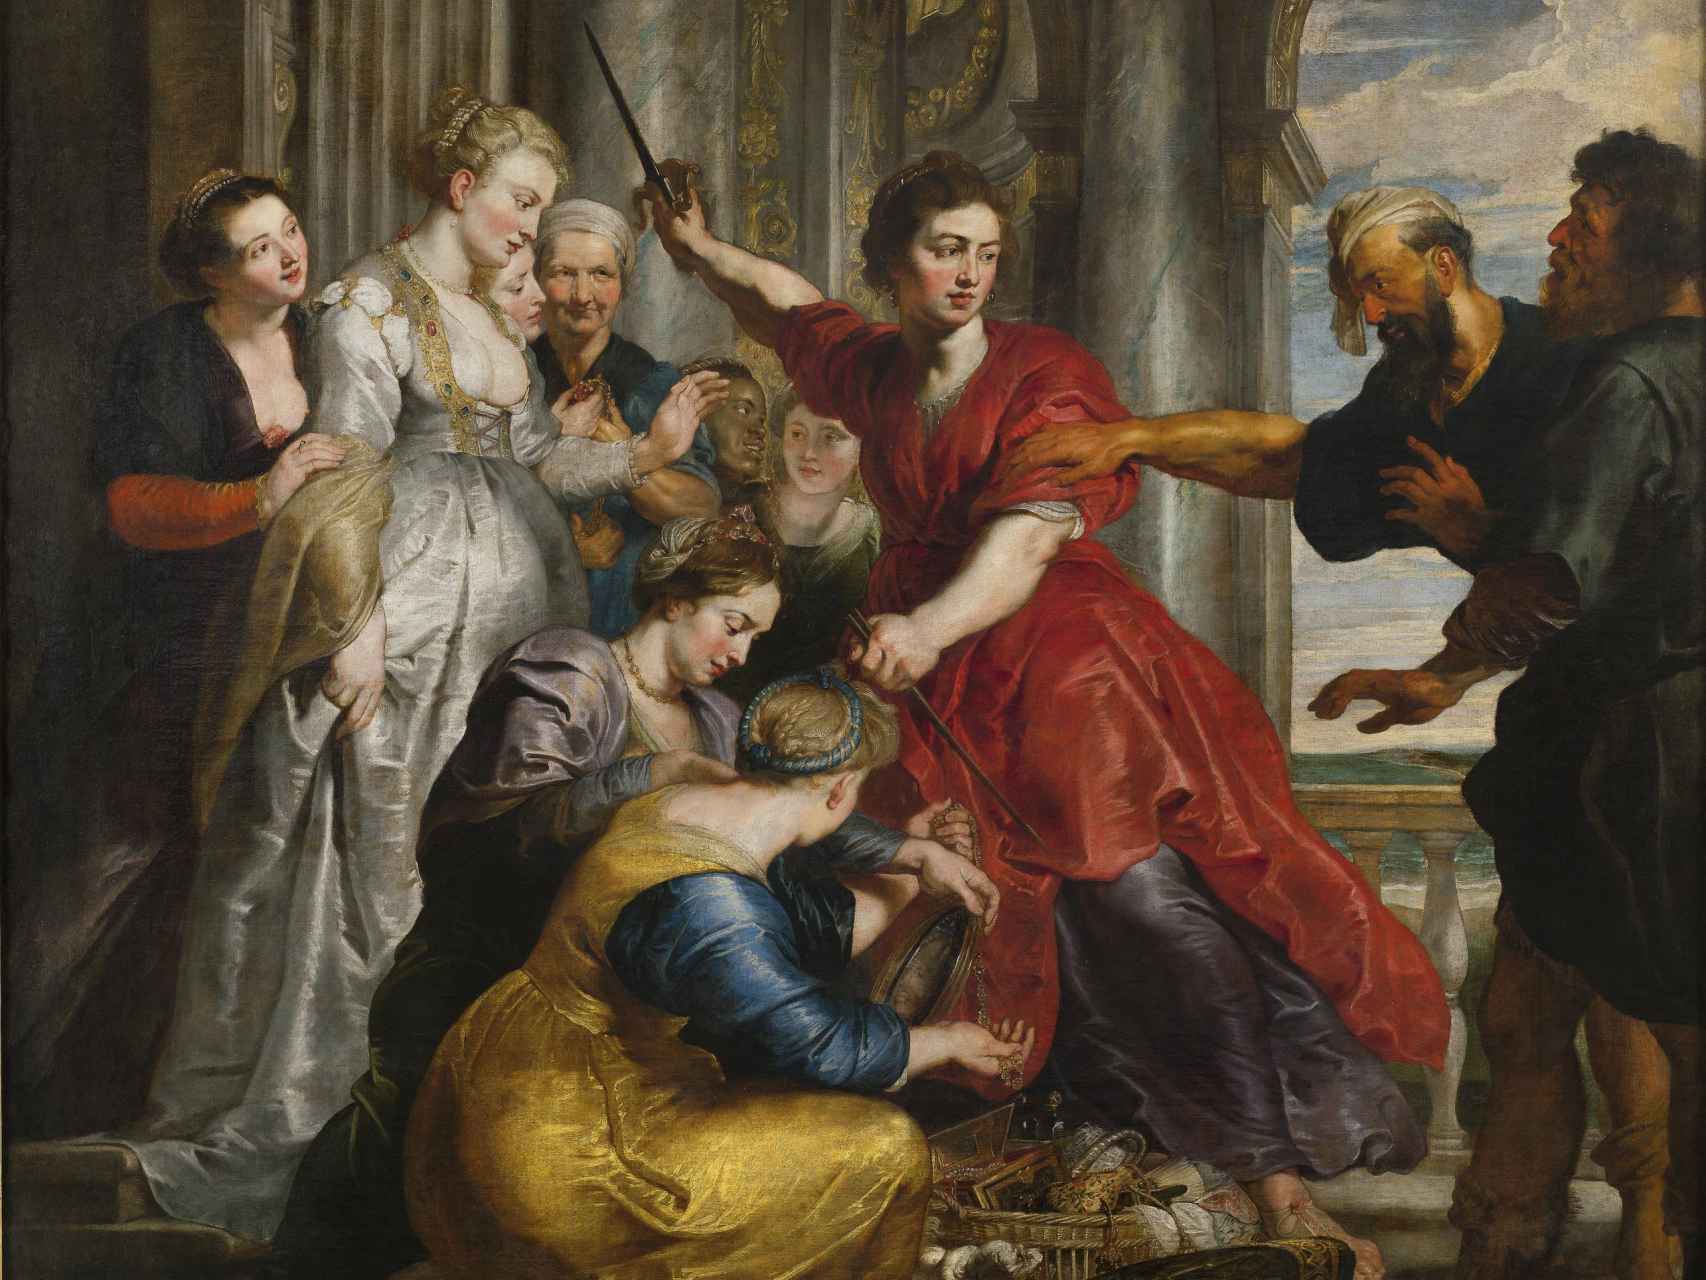 'Aquiles descubierto por Ulises', pintado por Van Dyck y Rubens